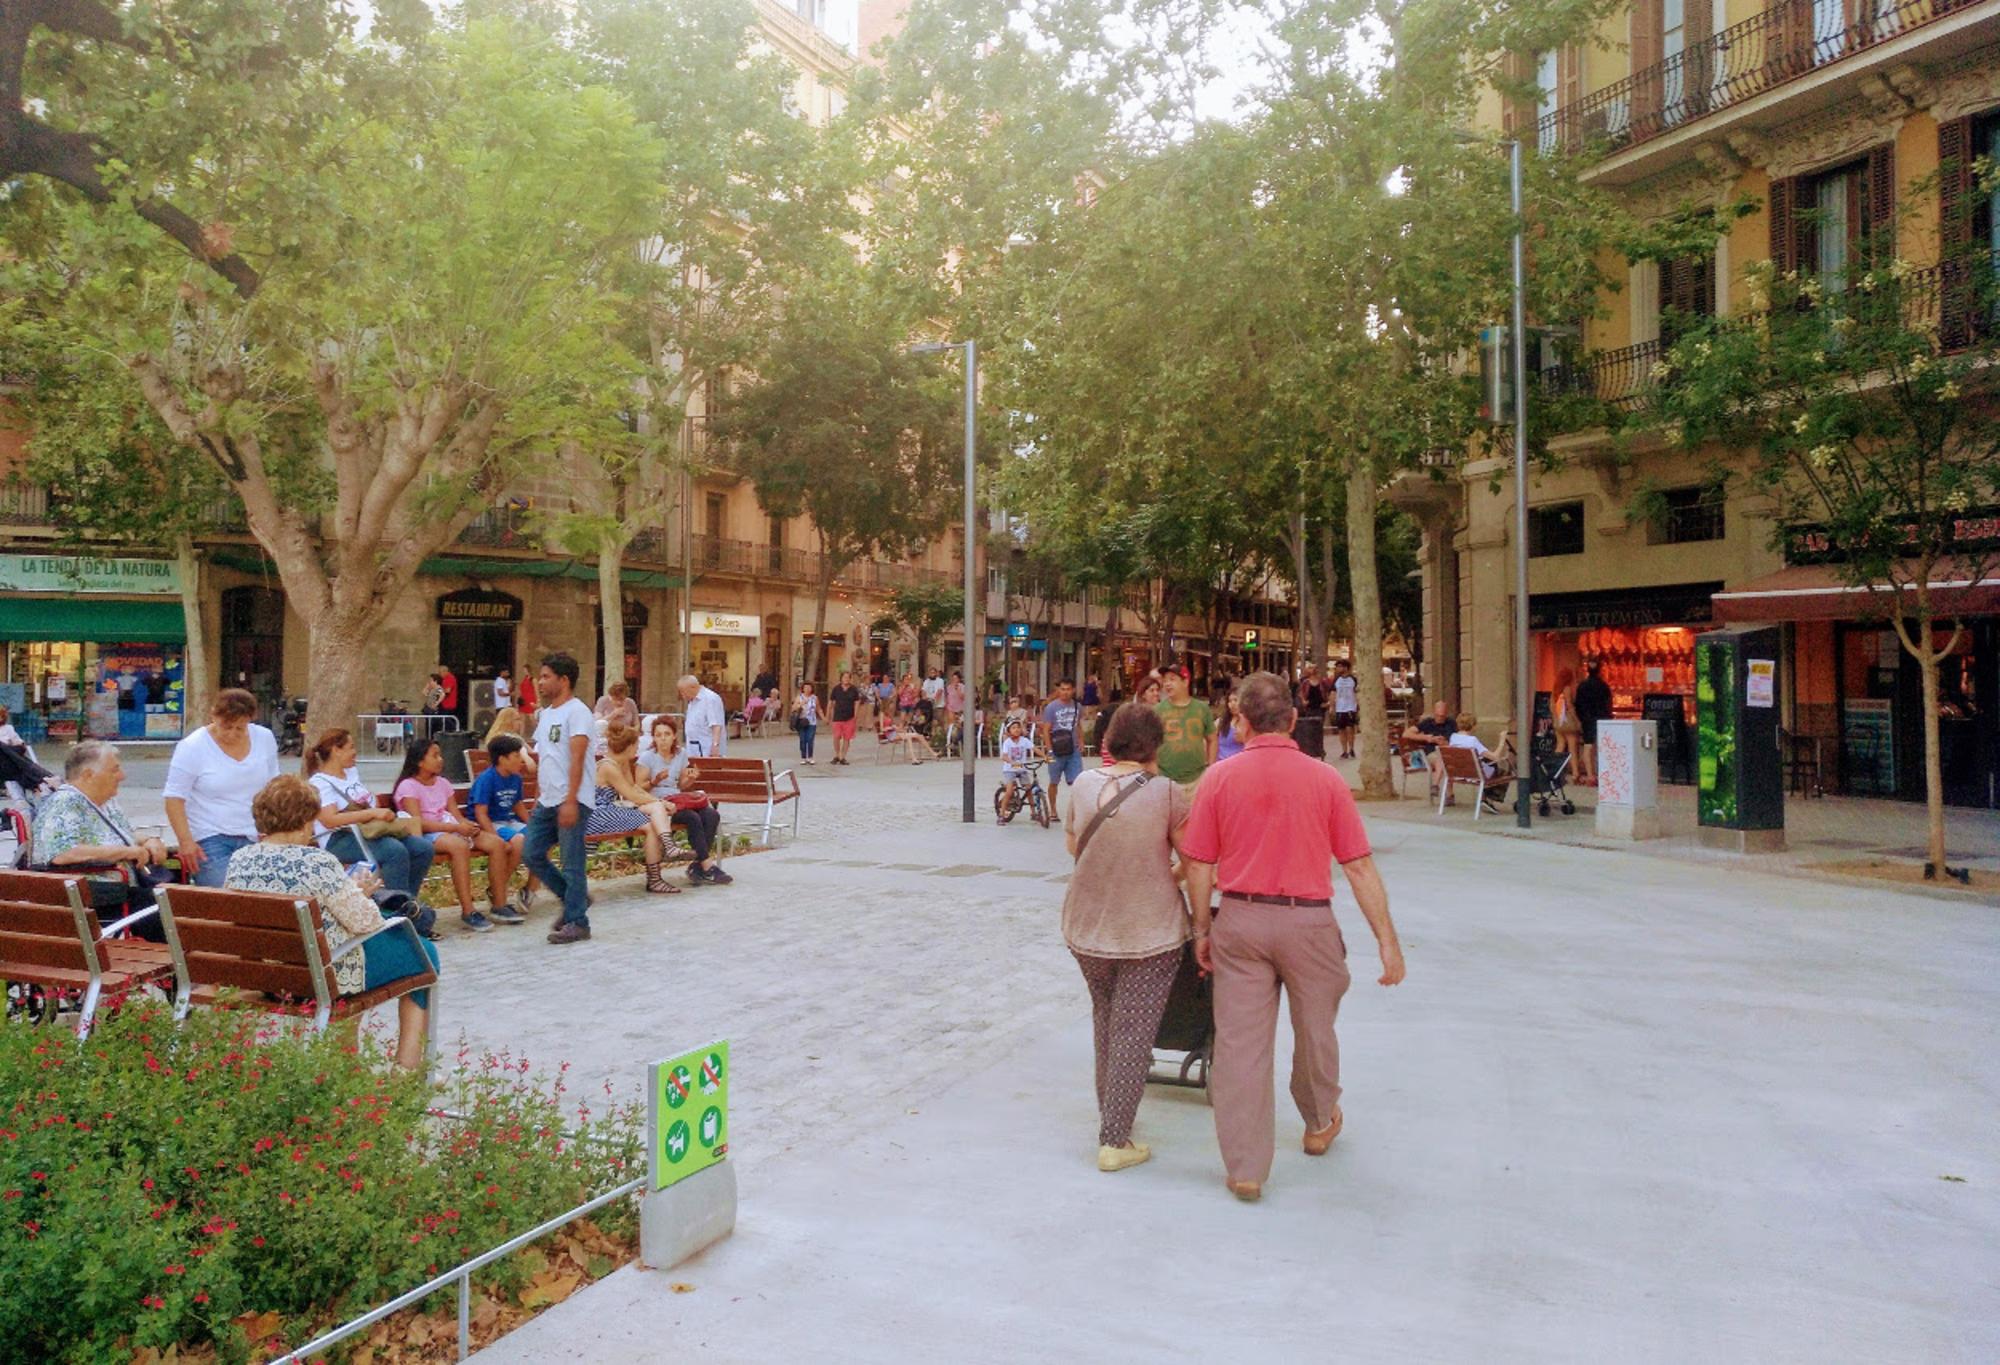 Supermanzana del barrio de Sant Antoni (Barcelona) con entorno pacificado